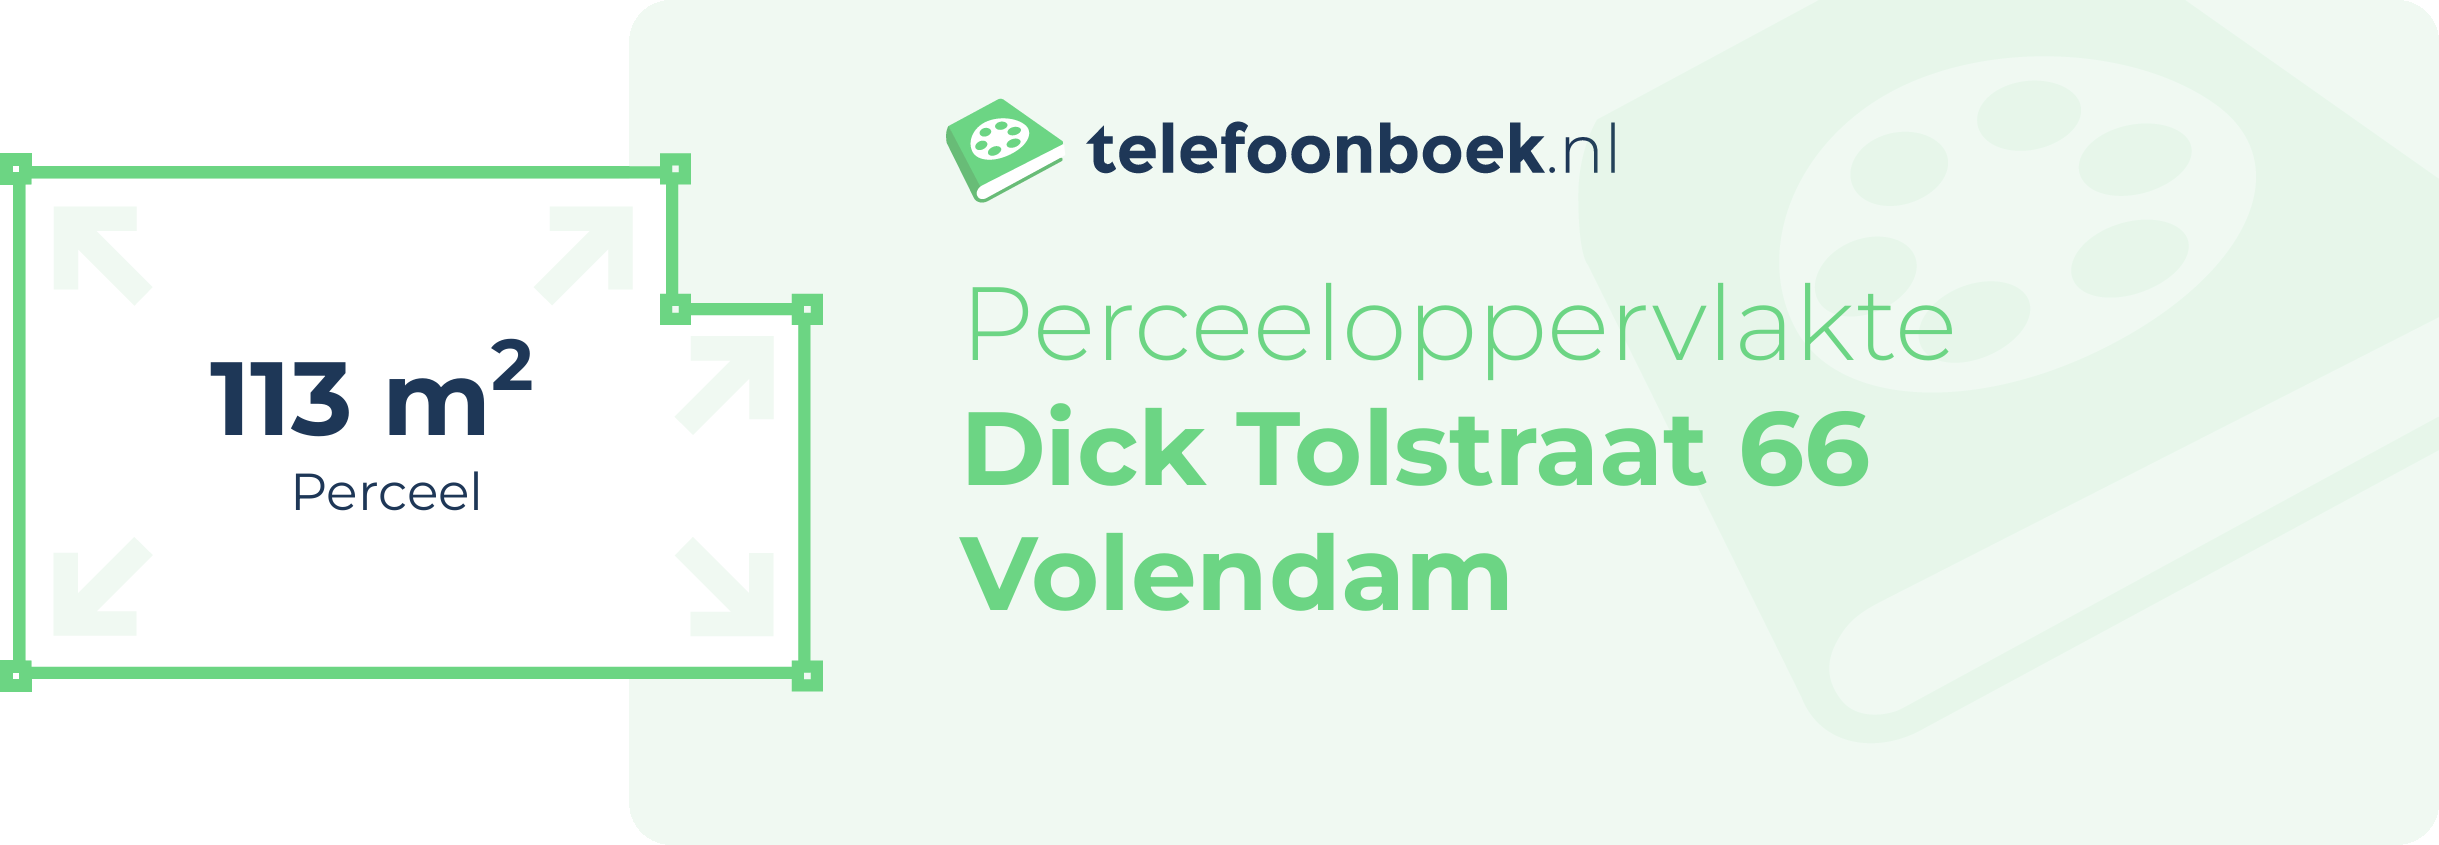 Perceeloppervlakte Dick Tolstraat 66 Volendam